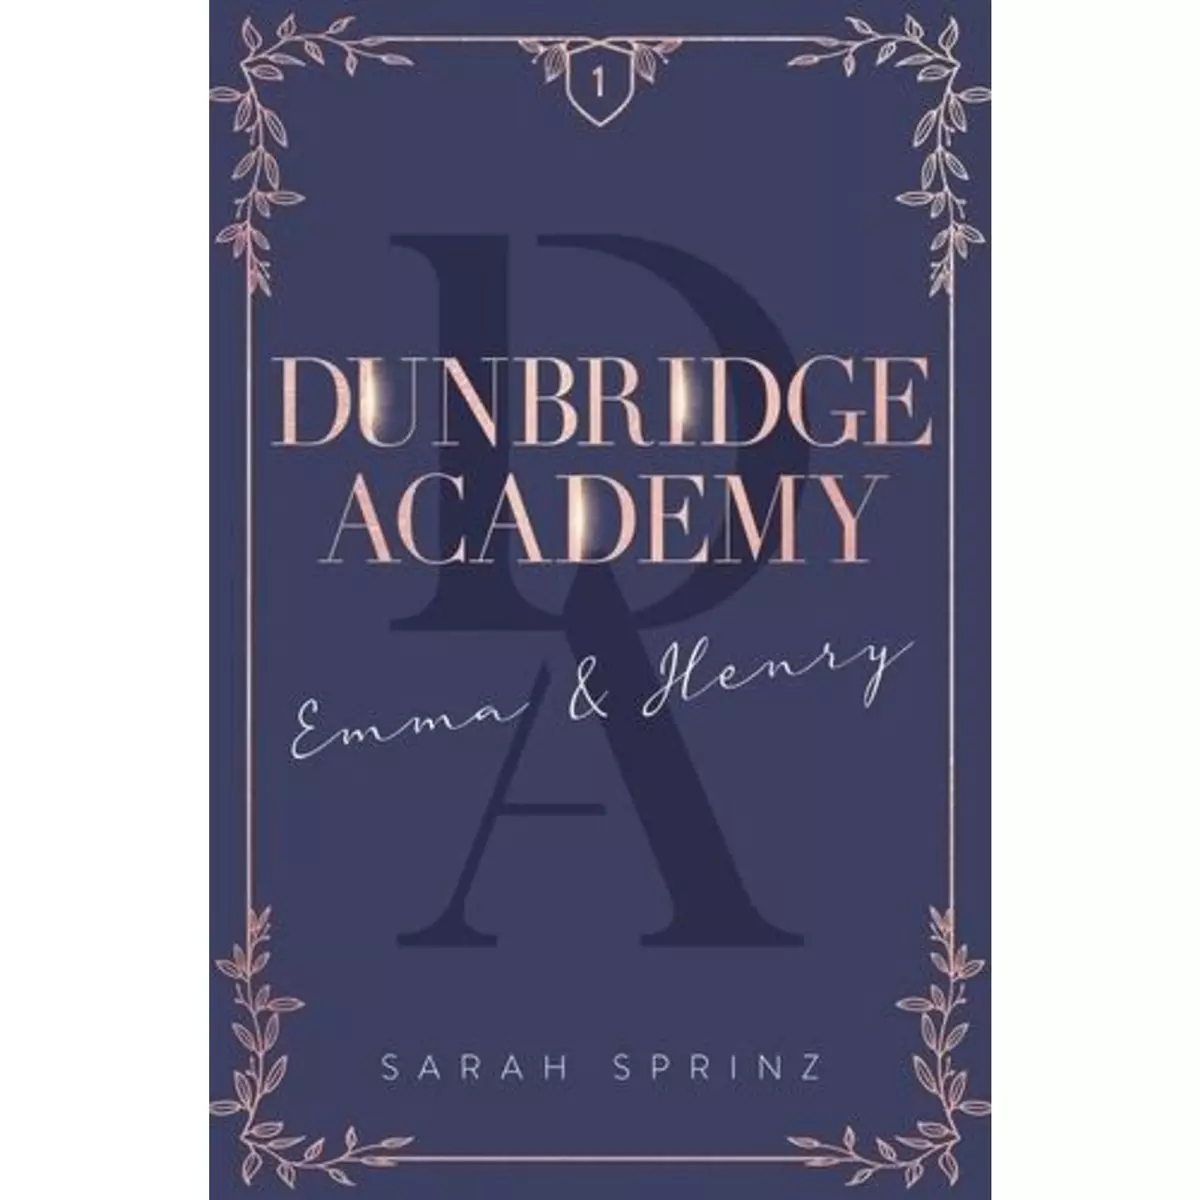  DUNBRIDGE ACADEMY TOME 1 : EMMA & HENRY, Sprinz Sarah